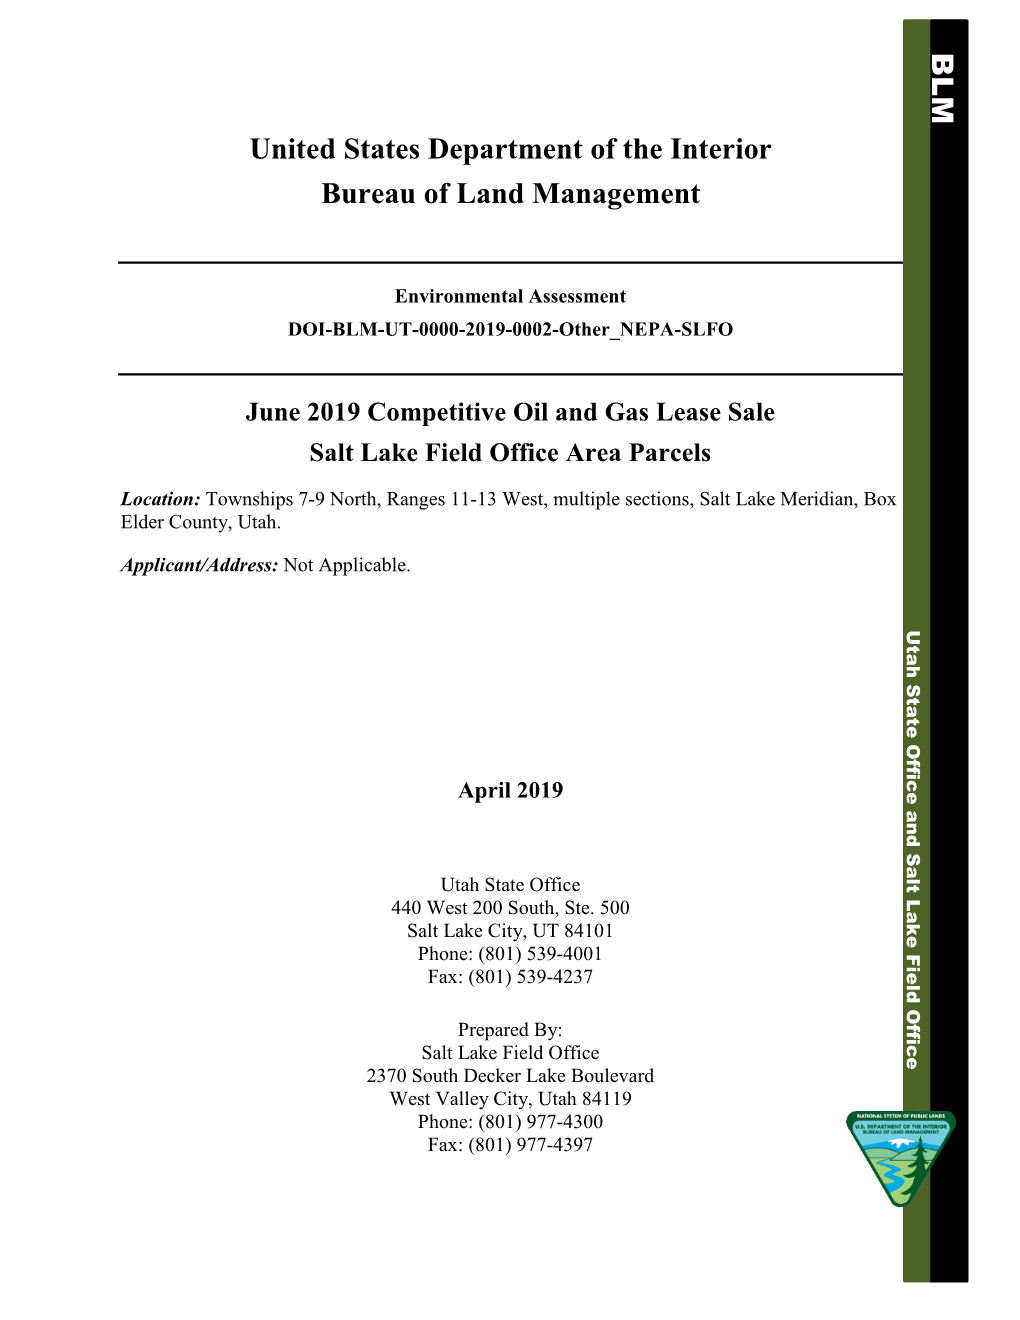 Environmental Assessment DOI-BLM-UT-0000-2019-0002-Other NEPA-SLFO